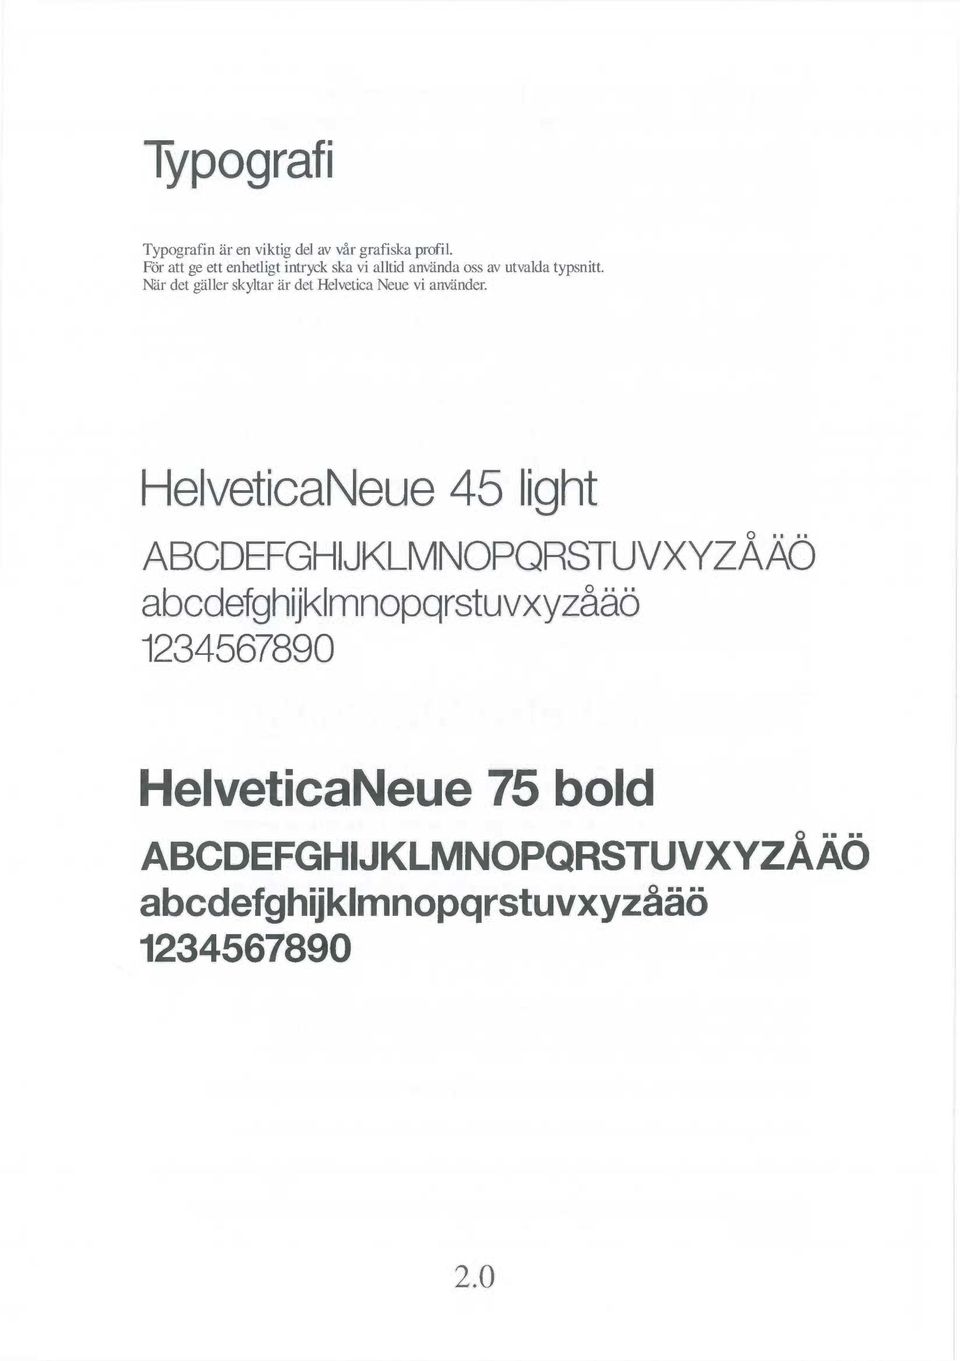 När det gäller skyltar är det Helvetica Neue vi använder.